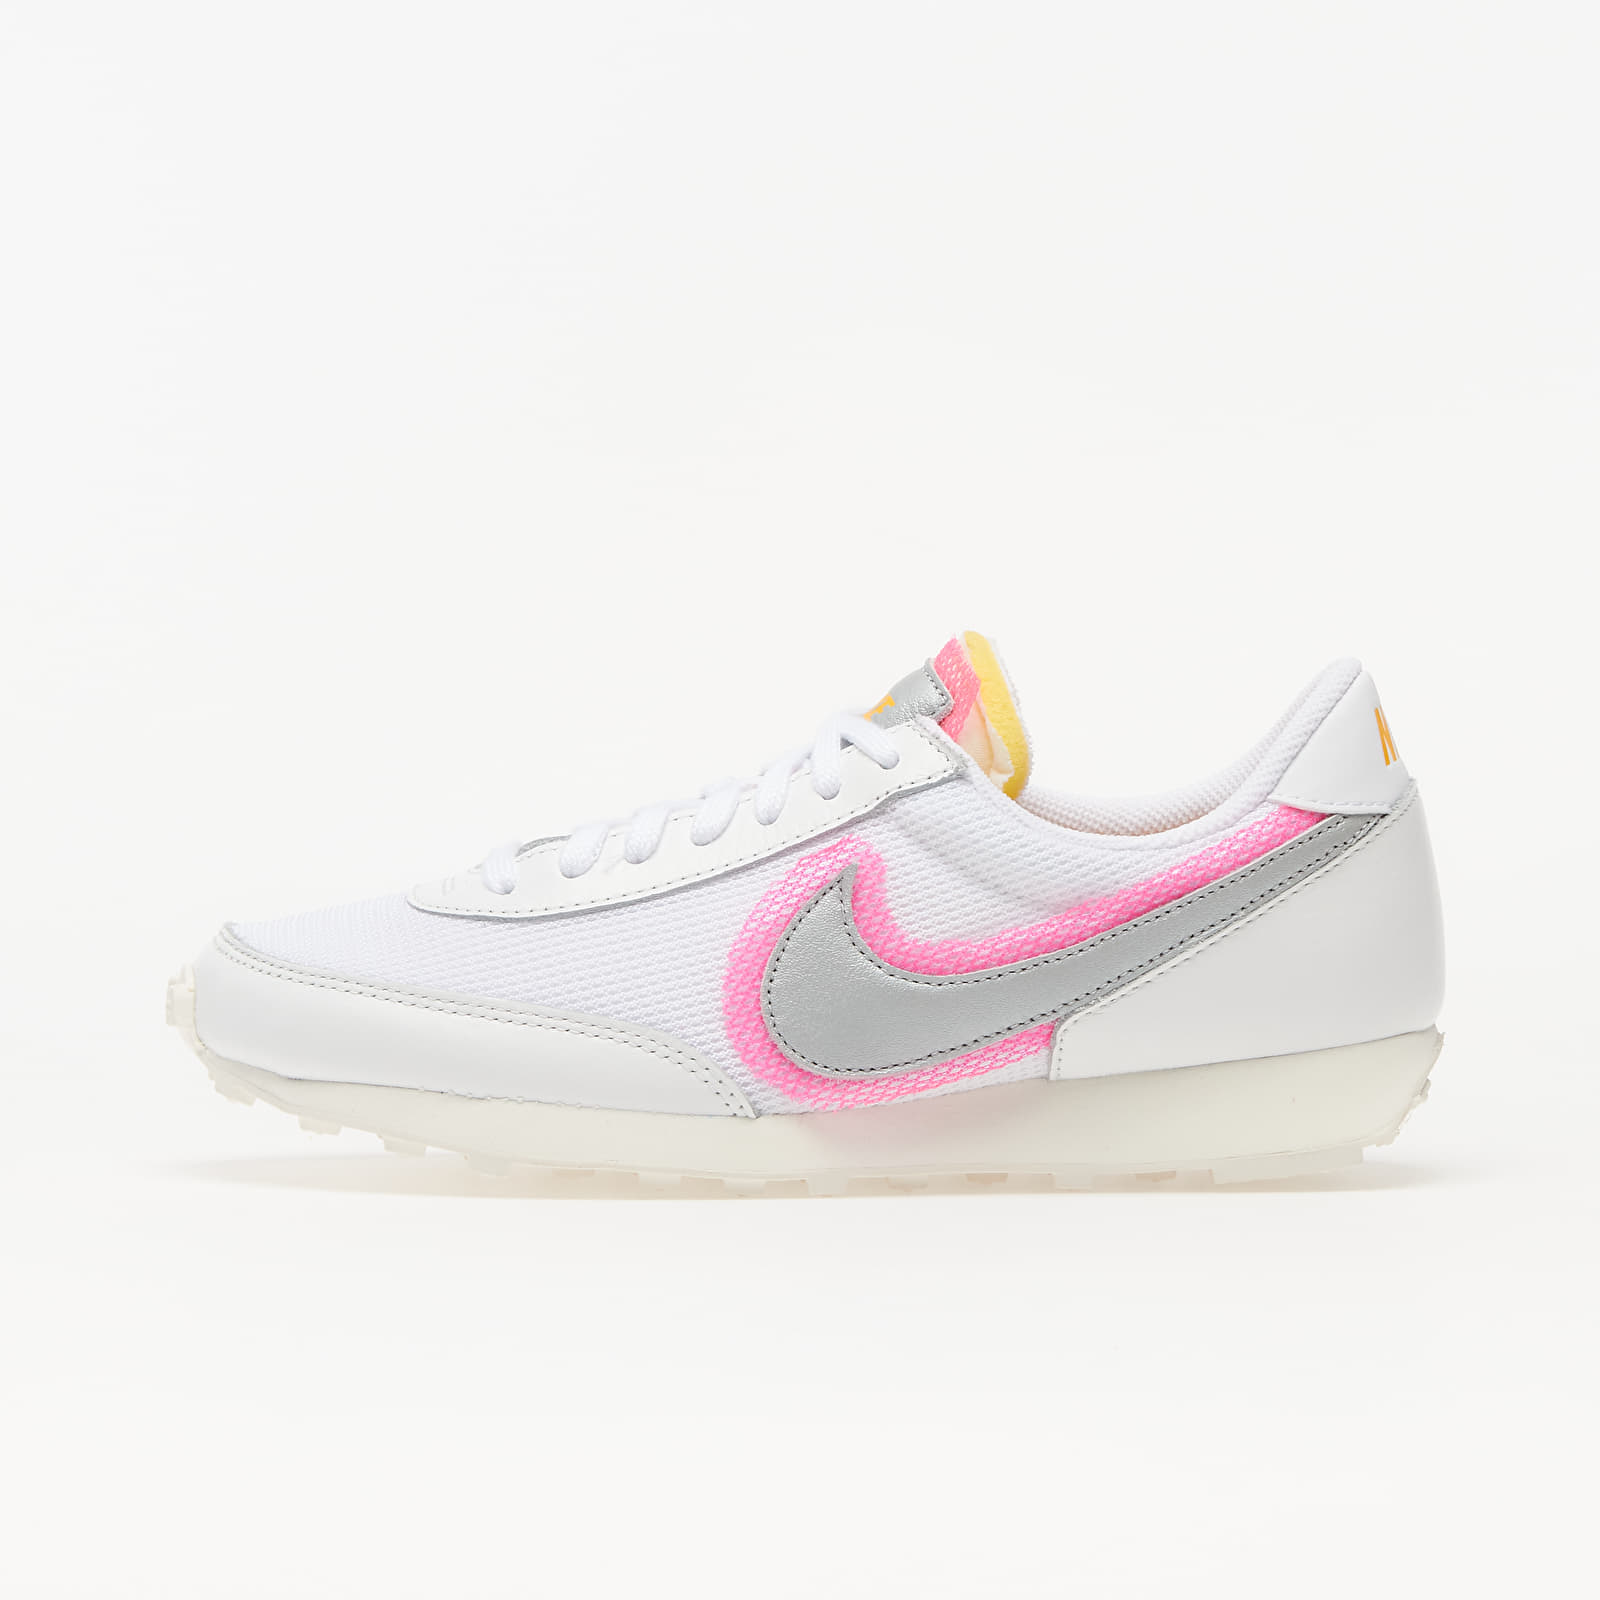 Γυναικεία παπούτσια Nike Daybreak White/ Metallic Silver-Hyper Pink